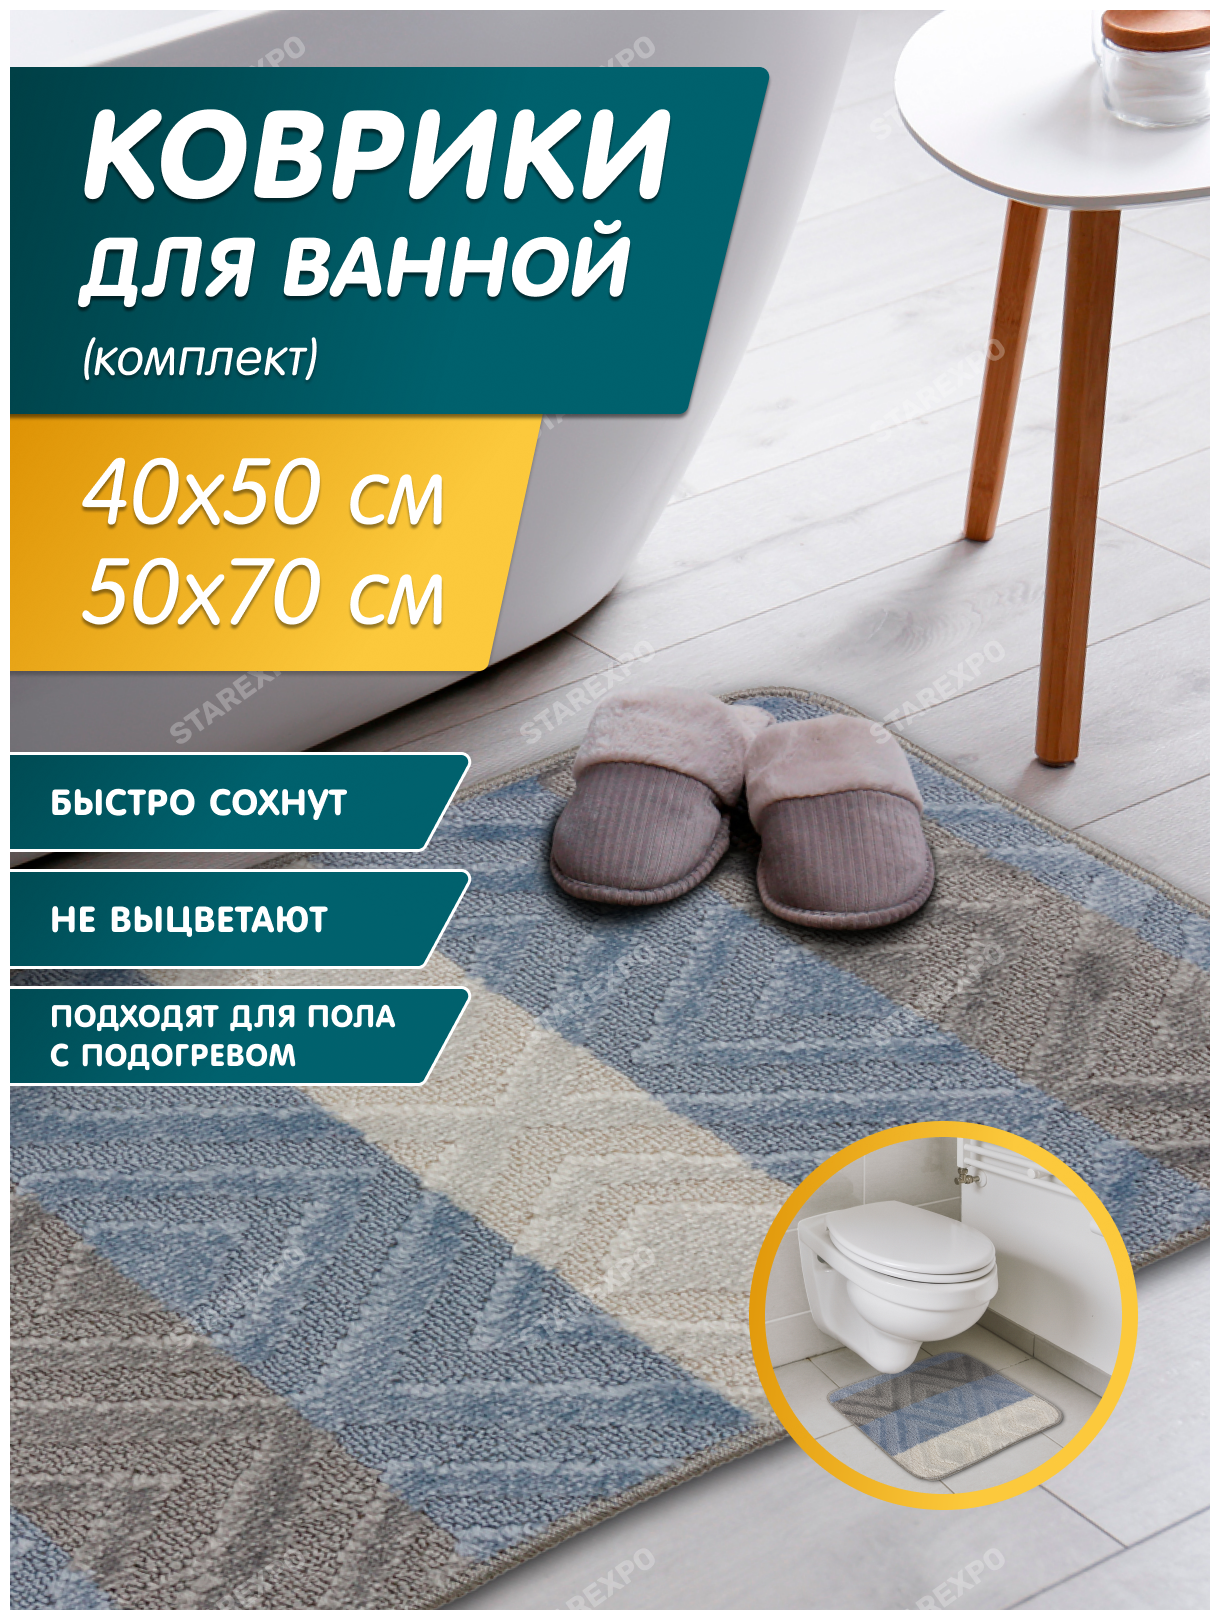 Комплект ковриков для ванной и туалета 2 штуки размер 50х70 см и 40х50 см цвет серый голубой